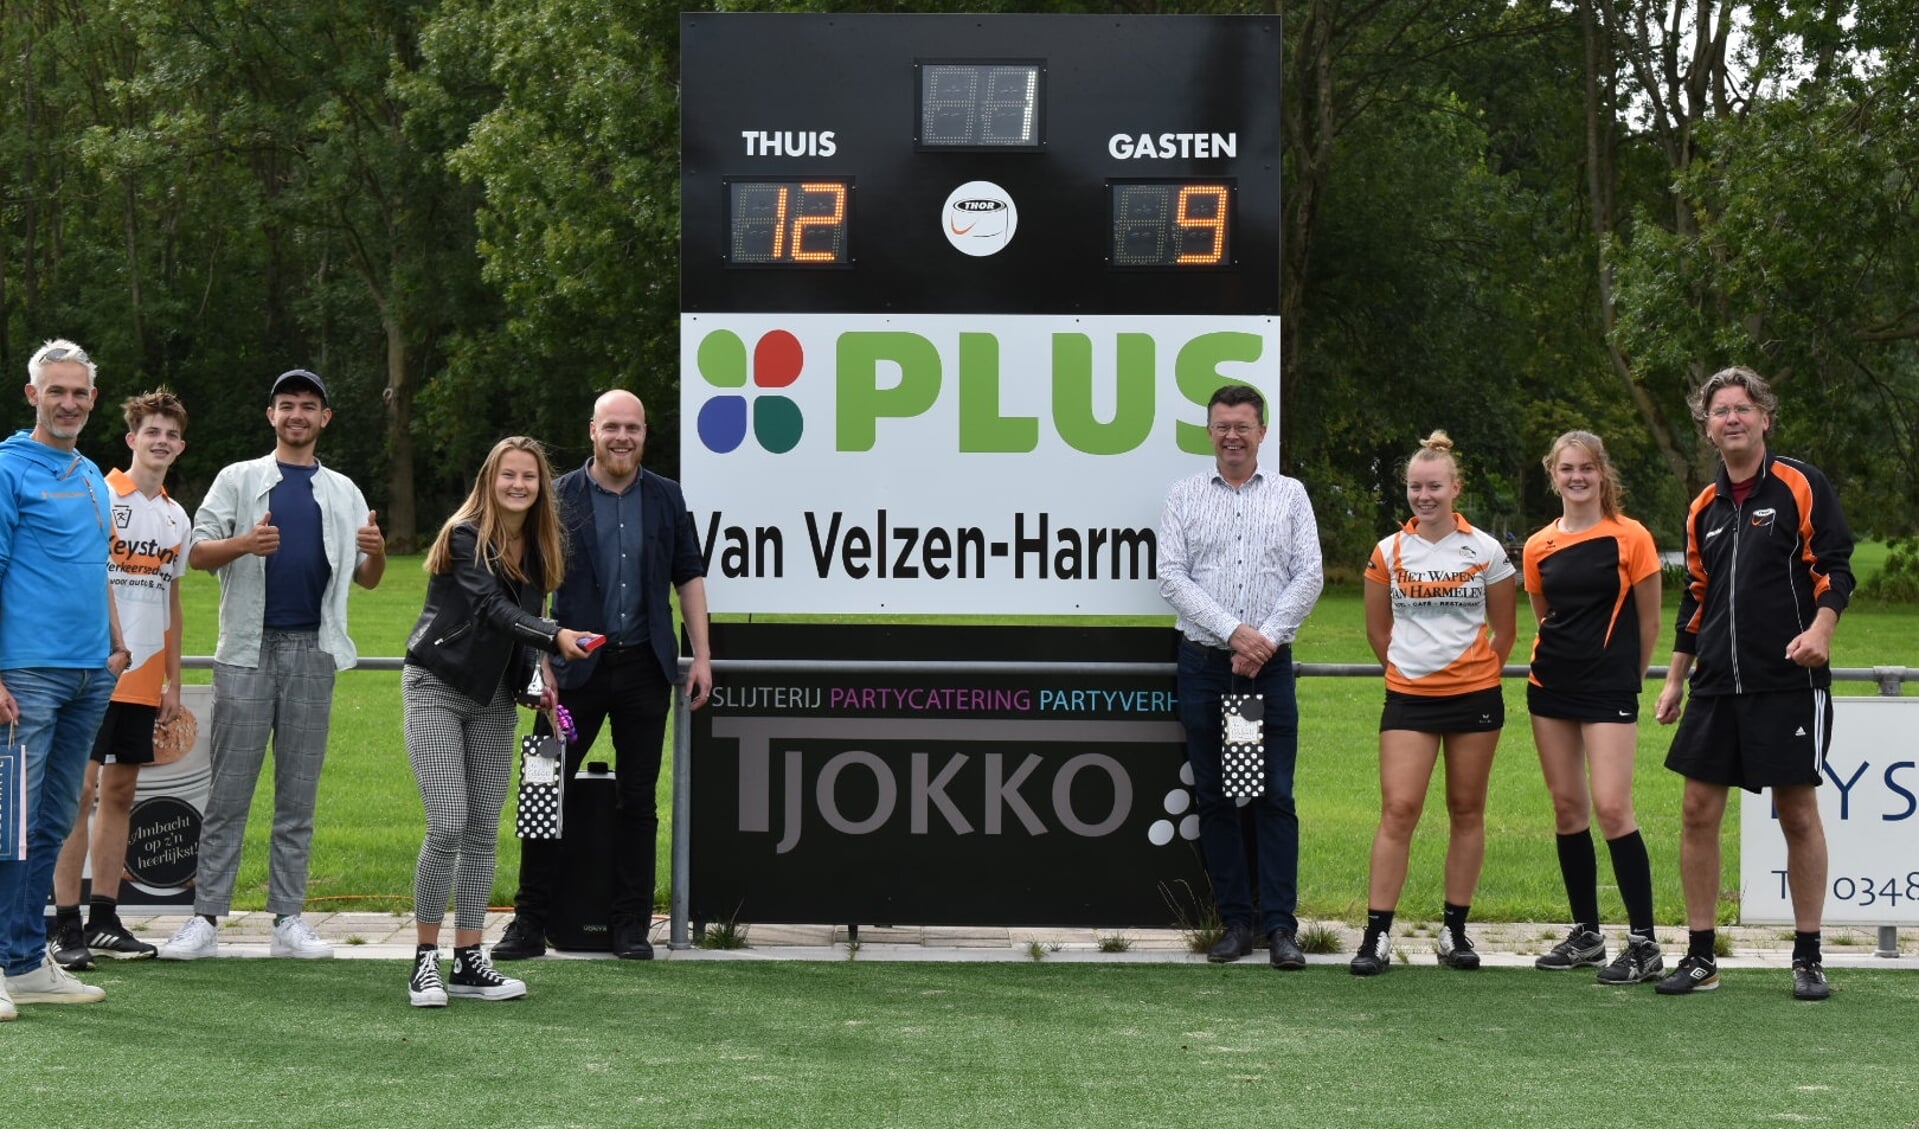 Groepsfoto met aan de directe zijden van het scorebord, links Michael de Bruijn en rechts Harold van Velzen namens PLUS van Velzen